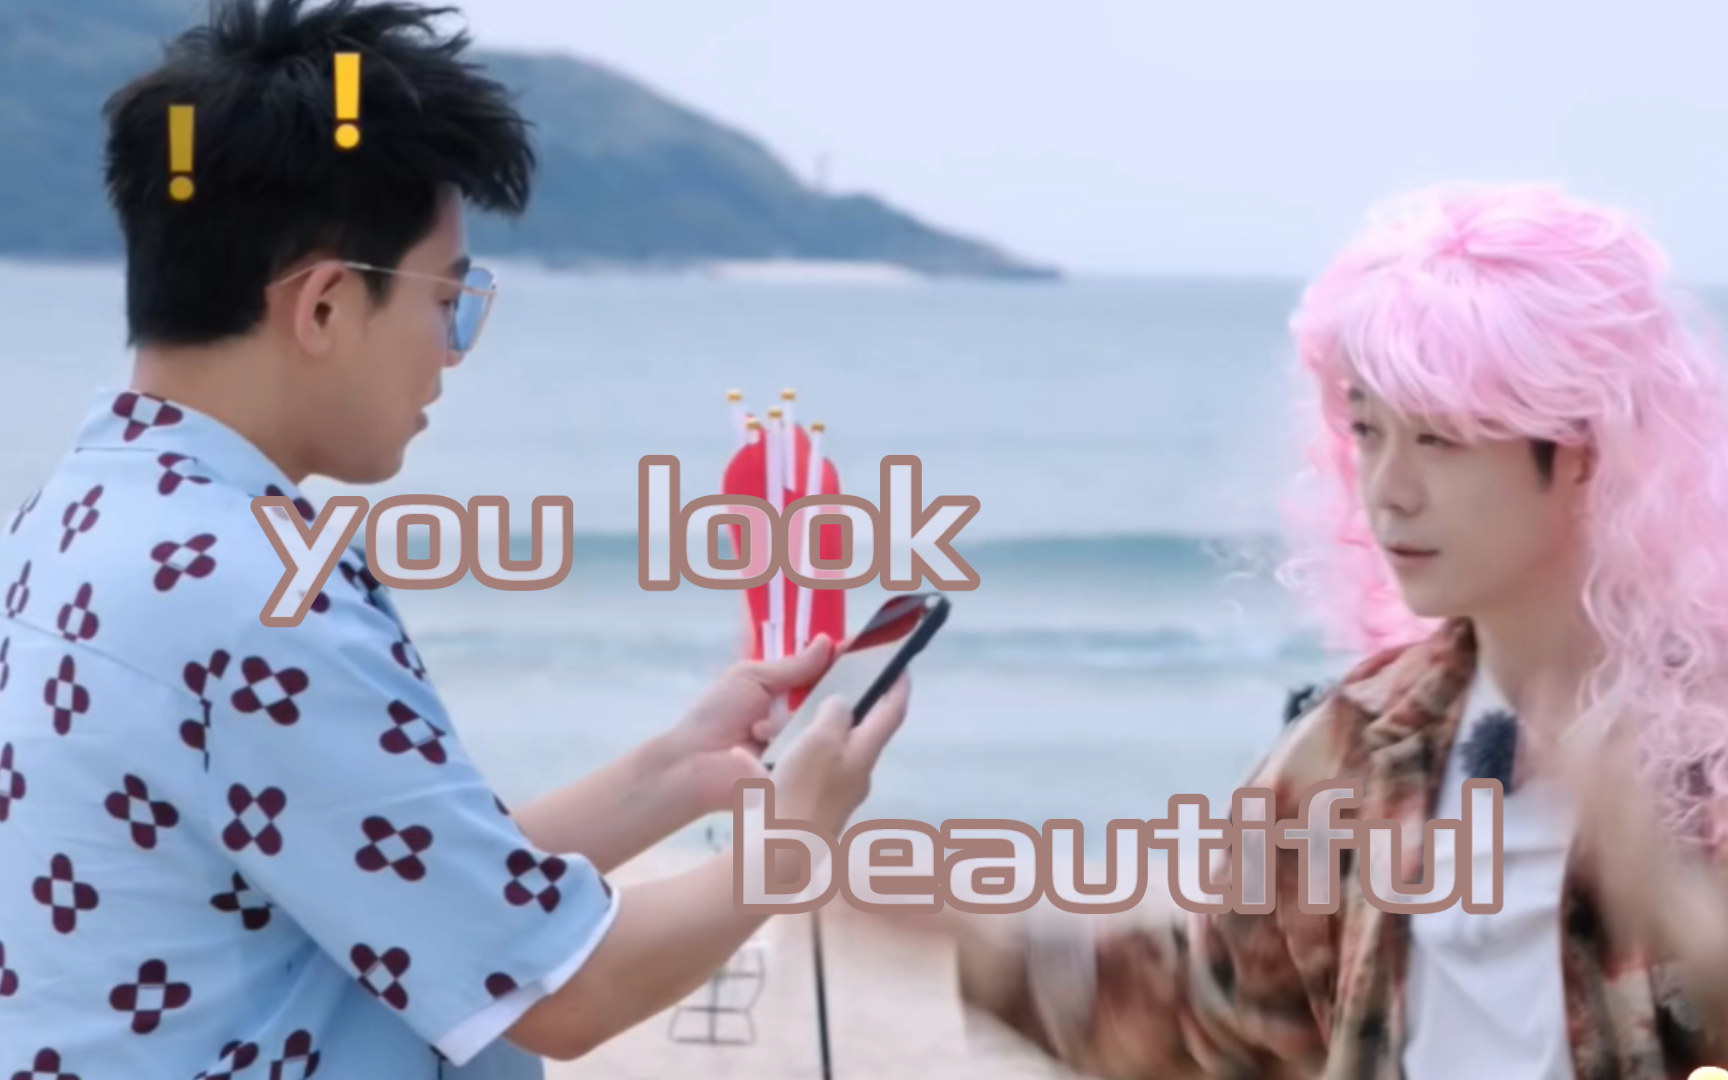 【醒鑫】you look beautiful（粉发拍照过程剪辑合并版）